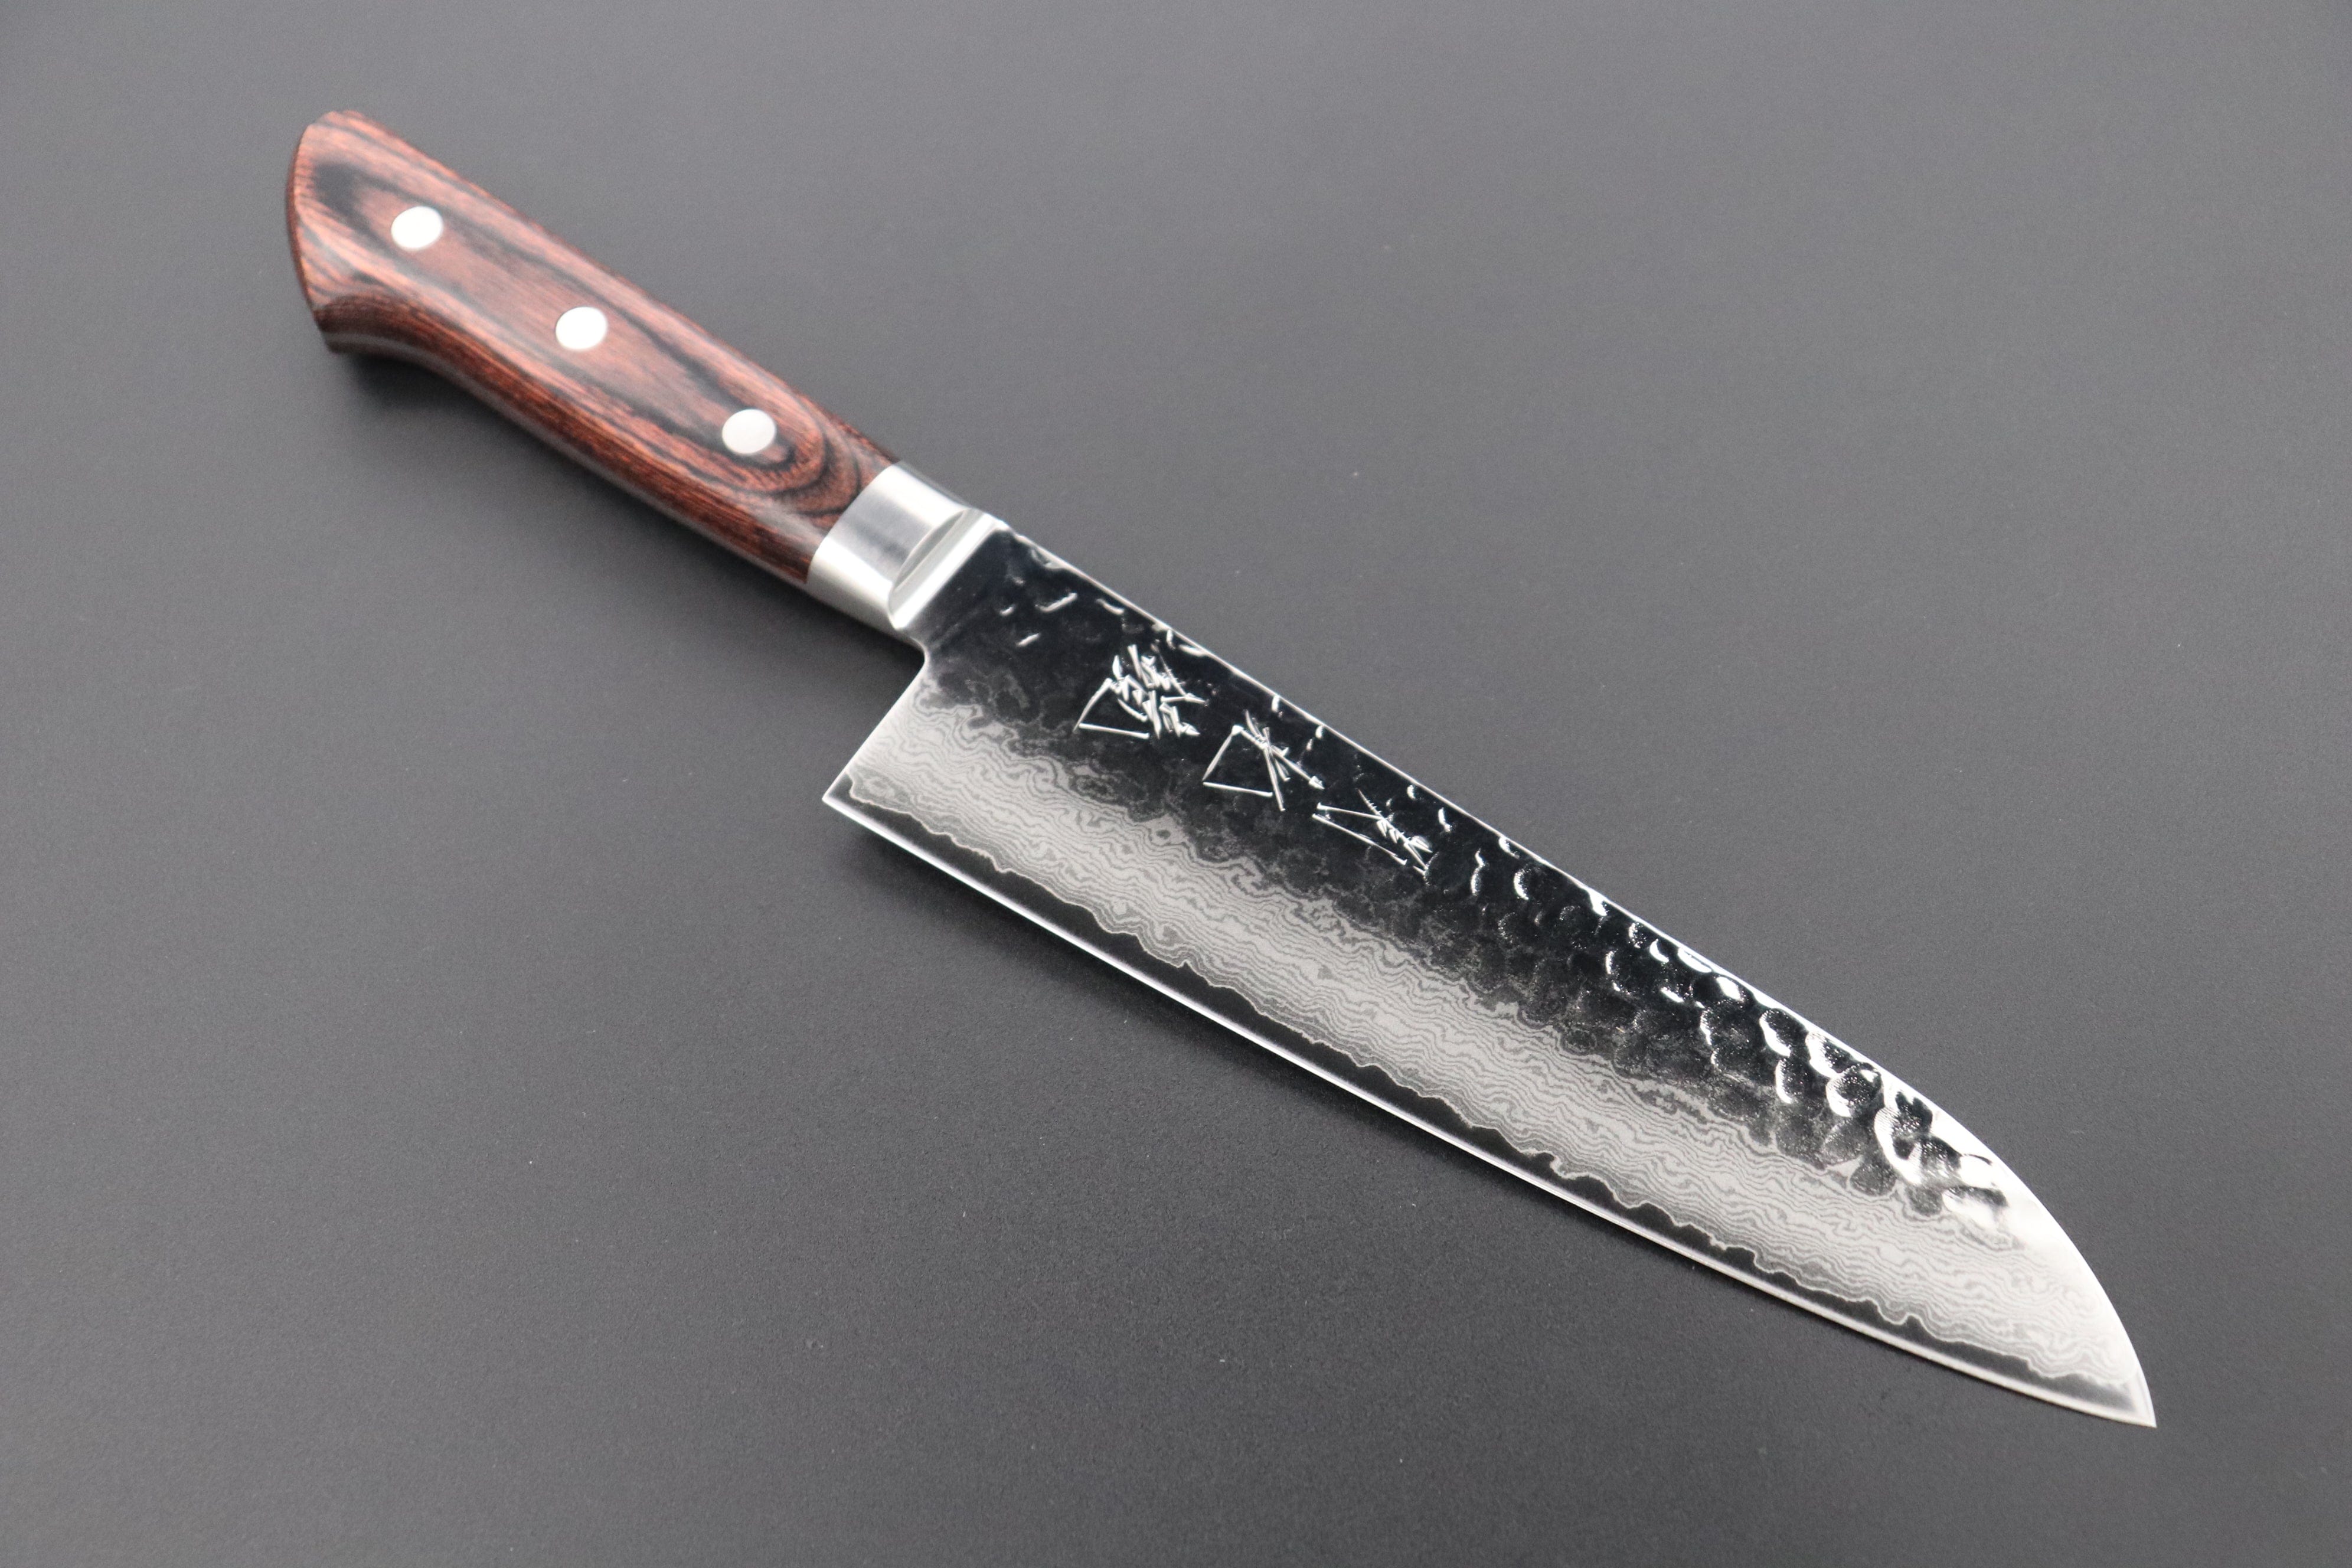 Wooden Series Knife Set – Nakano Knives